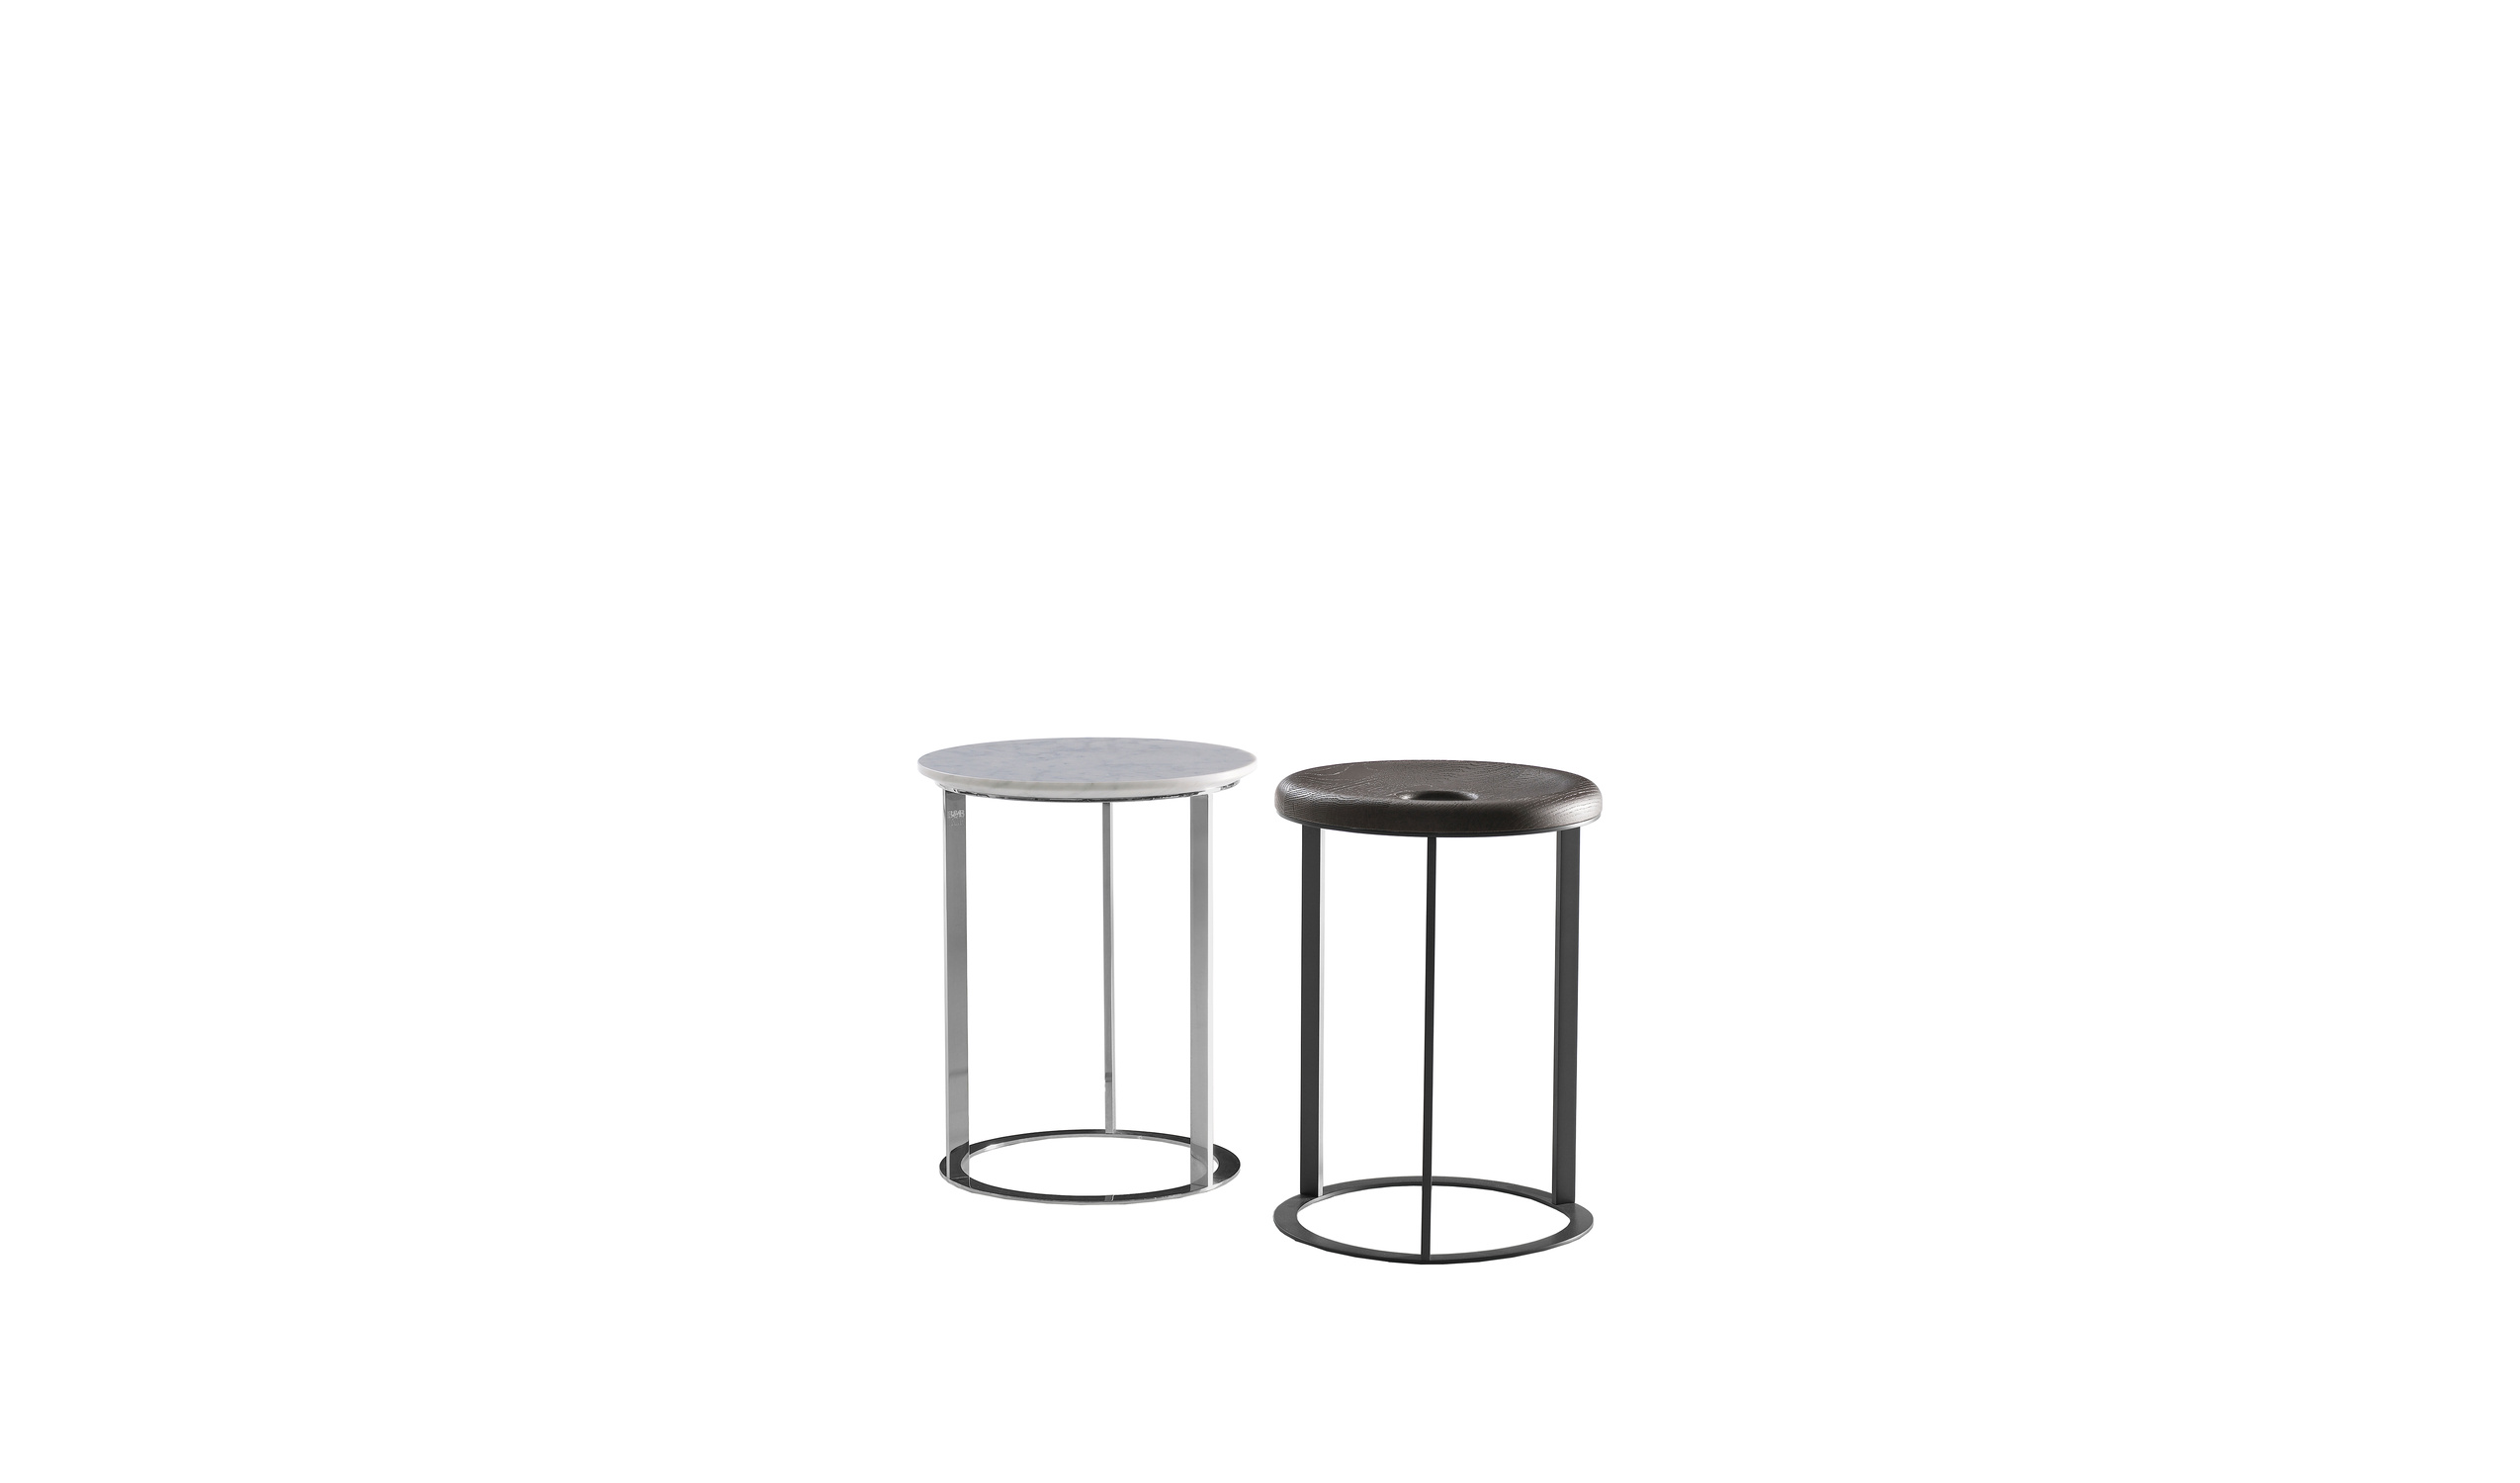 Designer italian modern small tables  - Mera Small tables 2